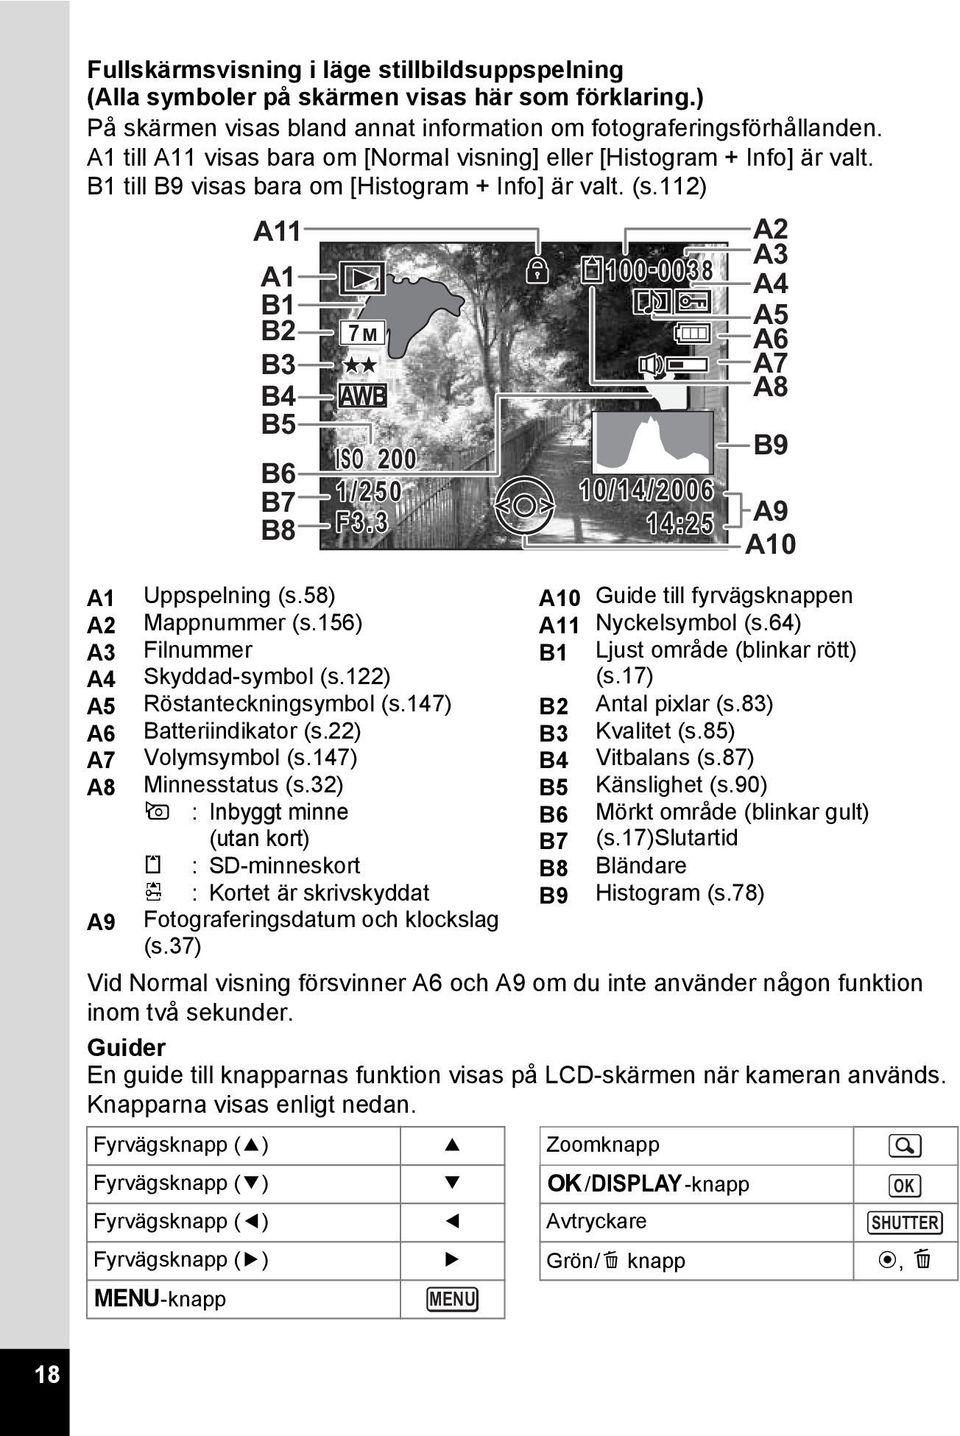 58) A10 Guide till fyrvägsknappen A2 Mappnummer (s.156) A11 Nyckelsymbol (s.64) A3 Filnummer B1 Ljust område (blinkar rött) A4 Skyddad-symbol (s.122) (s.17) A5 Röstanteckningsymbol (s.